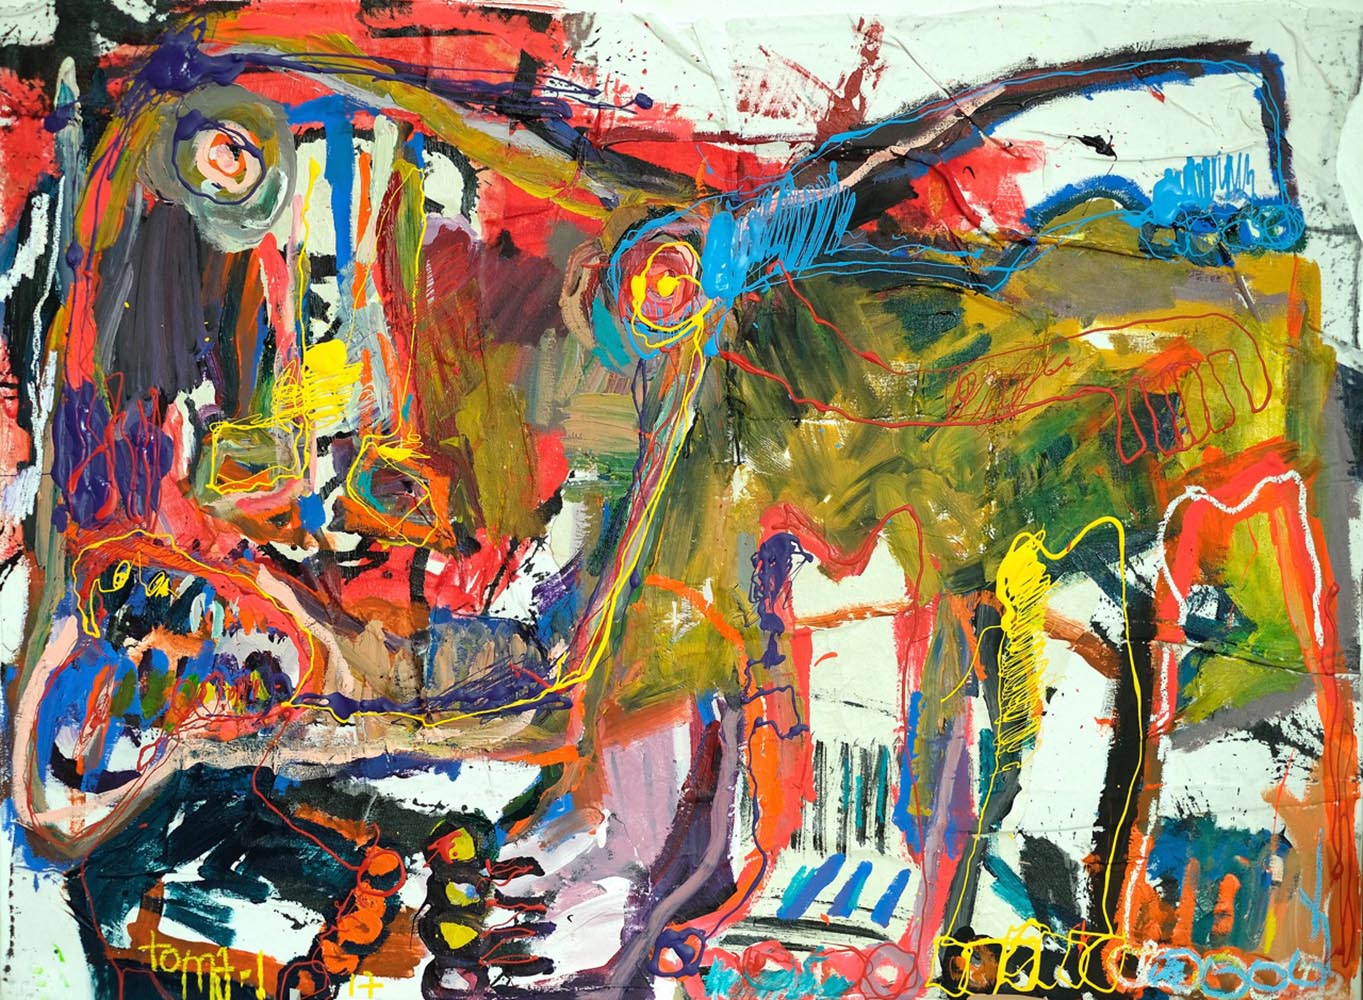 Bad dog and color Technique mixte sur toile.
97 x 130 cm.
Toma-L ©